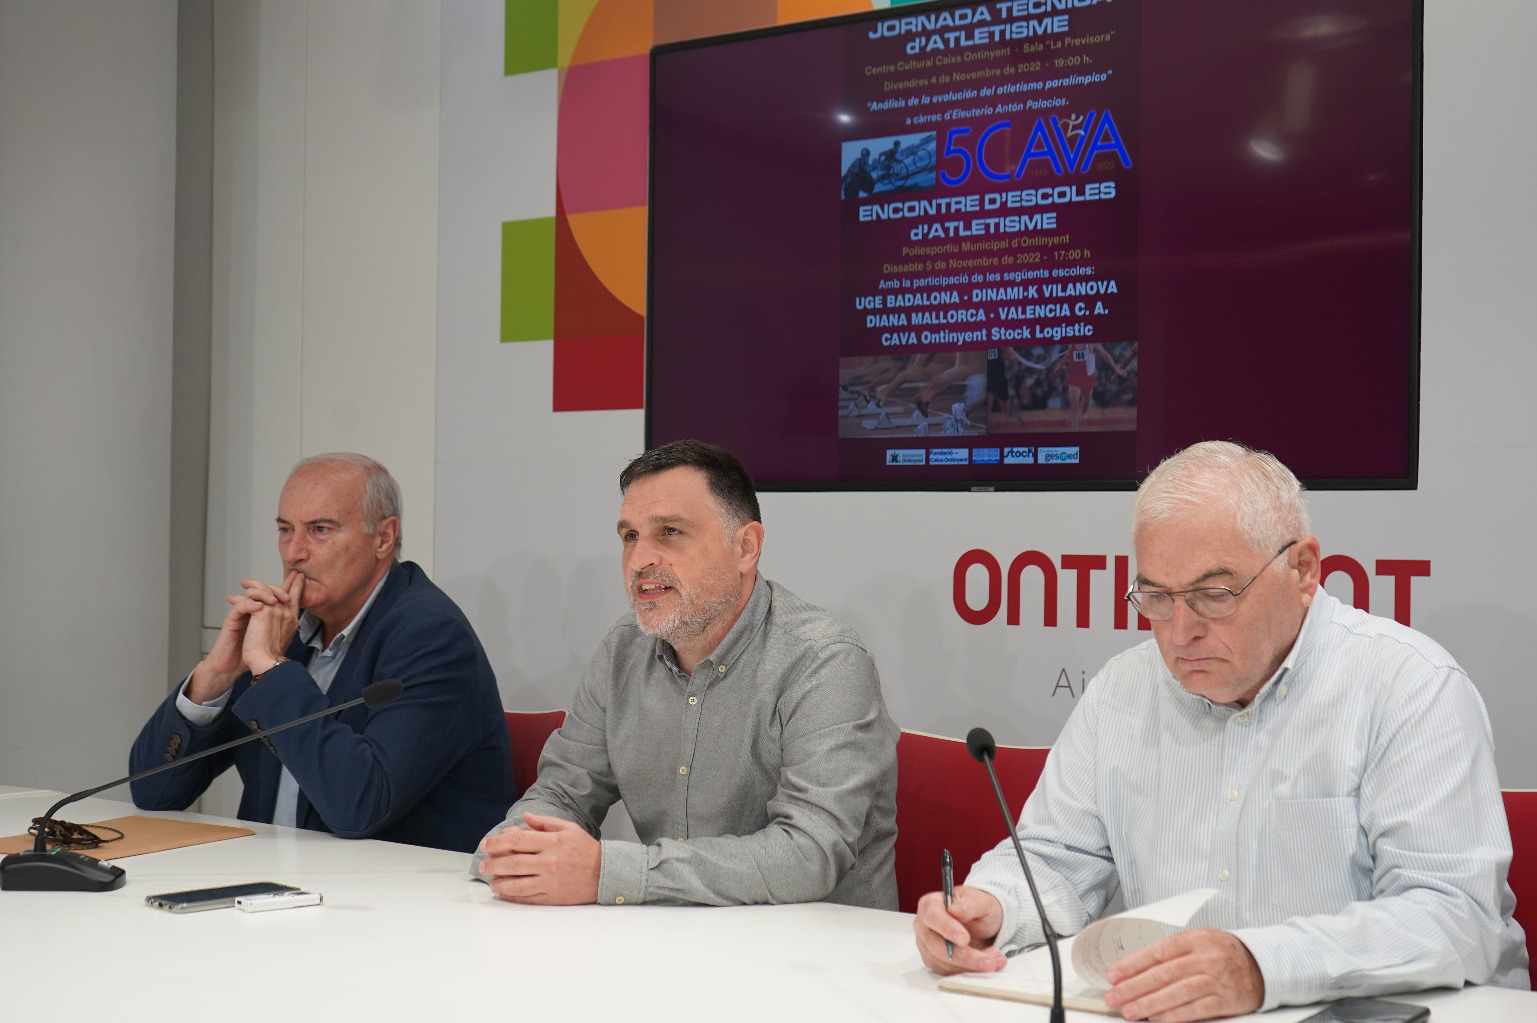 Ontinyent acogerá un encuentro de escuelas de atletismo El Periódico de Ontinyent - Noticias en Ontinyent